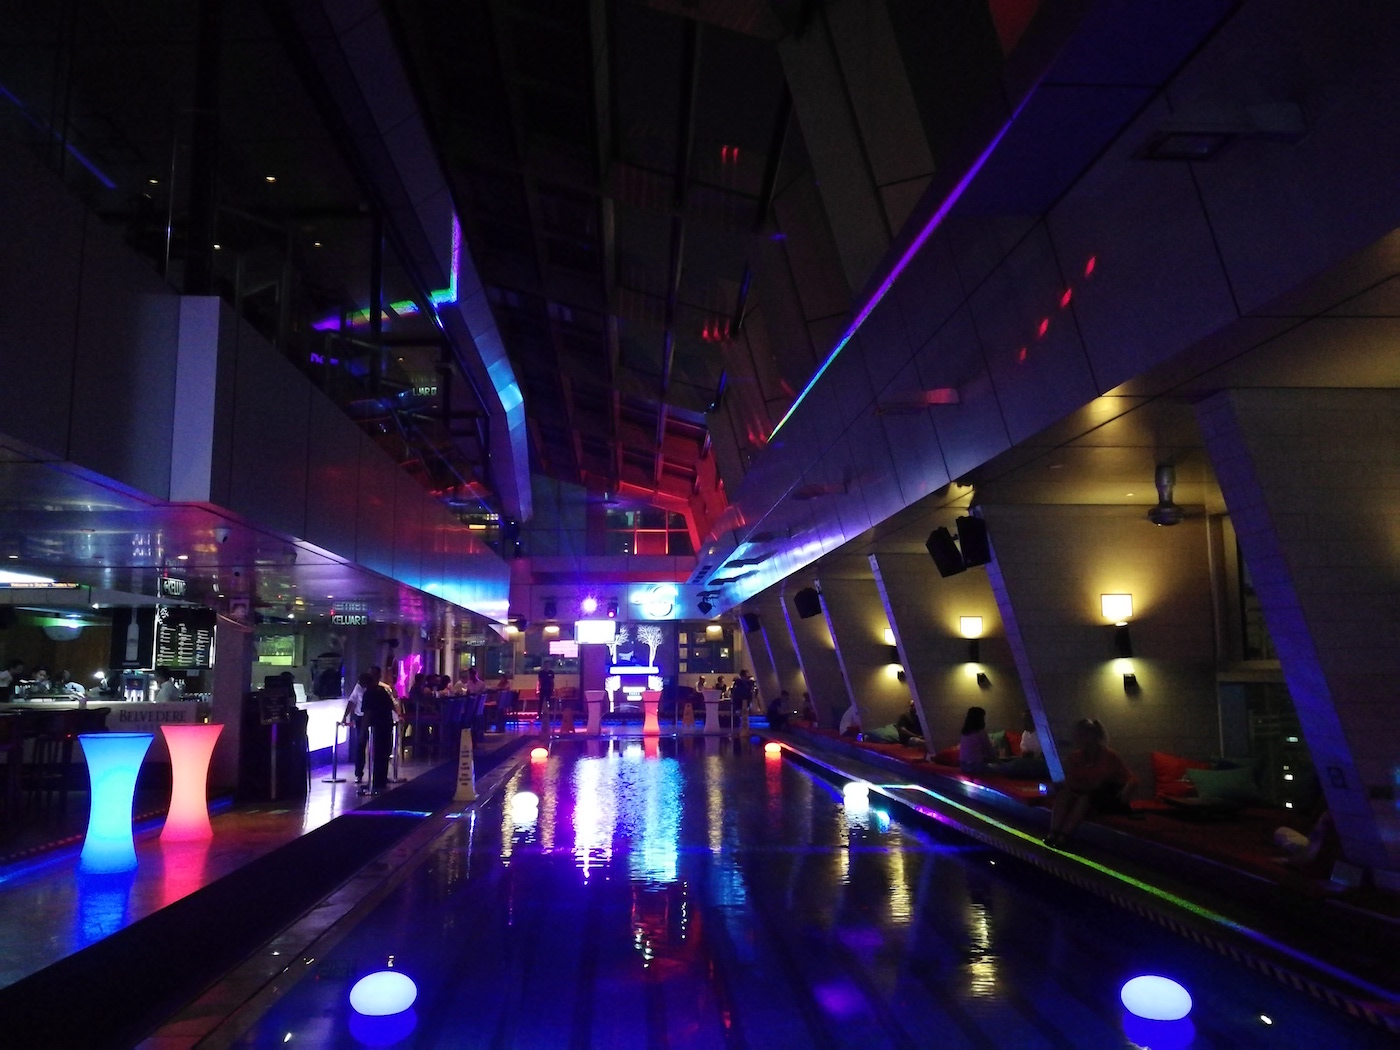 Traders Hotel Kuala Lumpur Sky Bar at Night